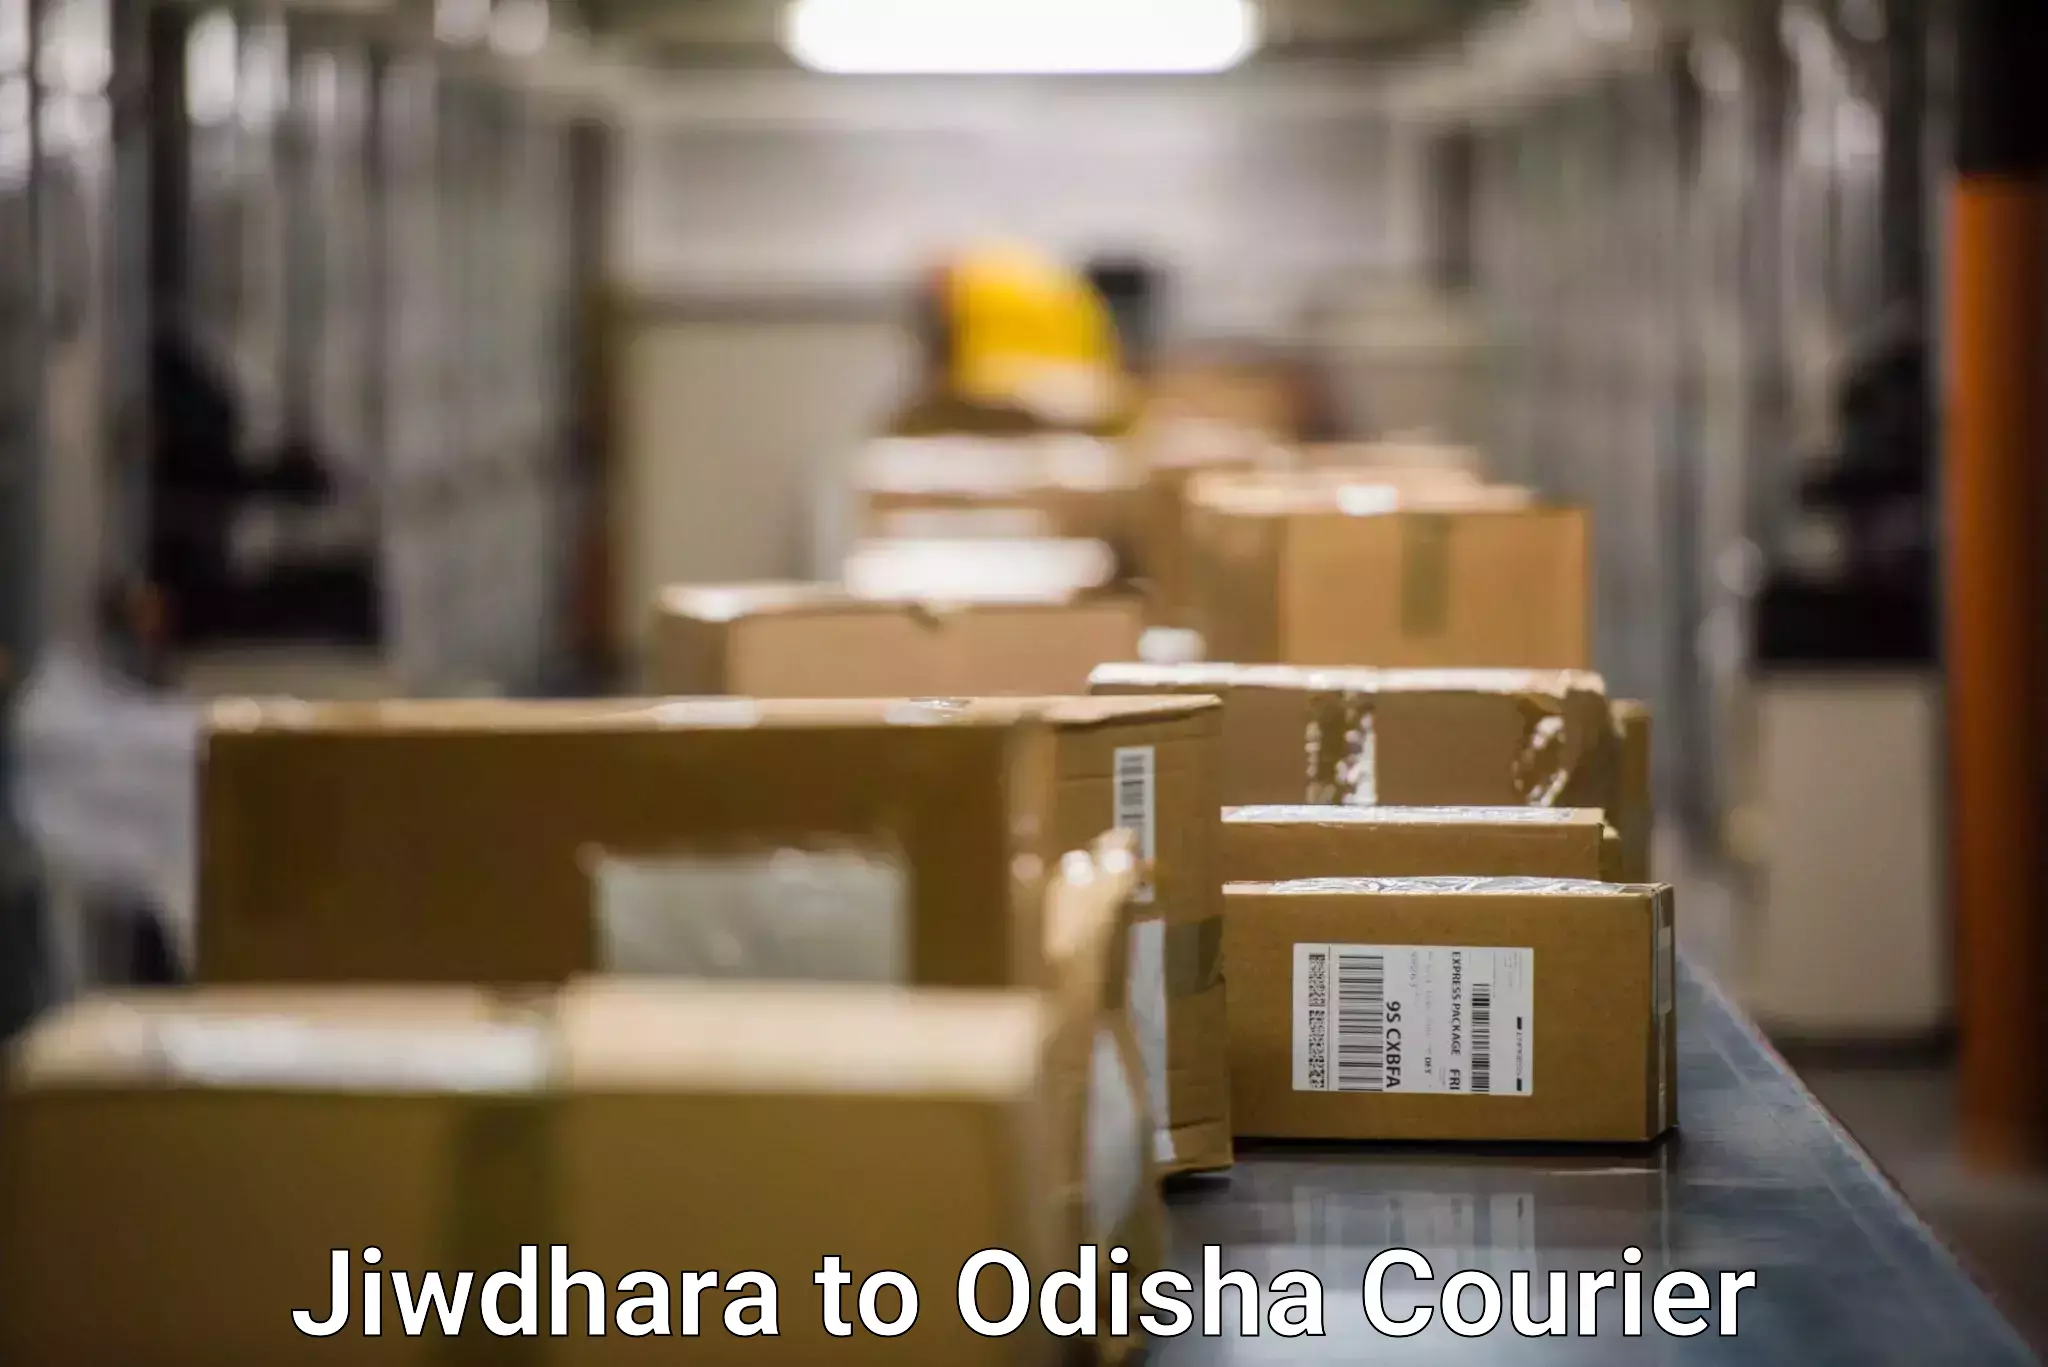 International parcel service Jiwdhara to Paikana